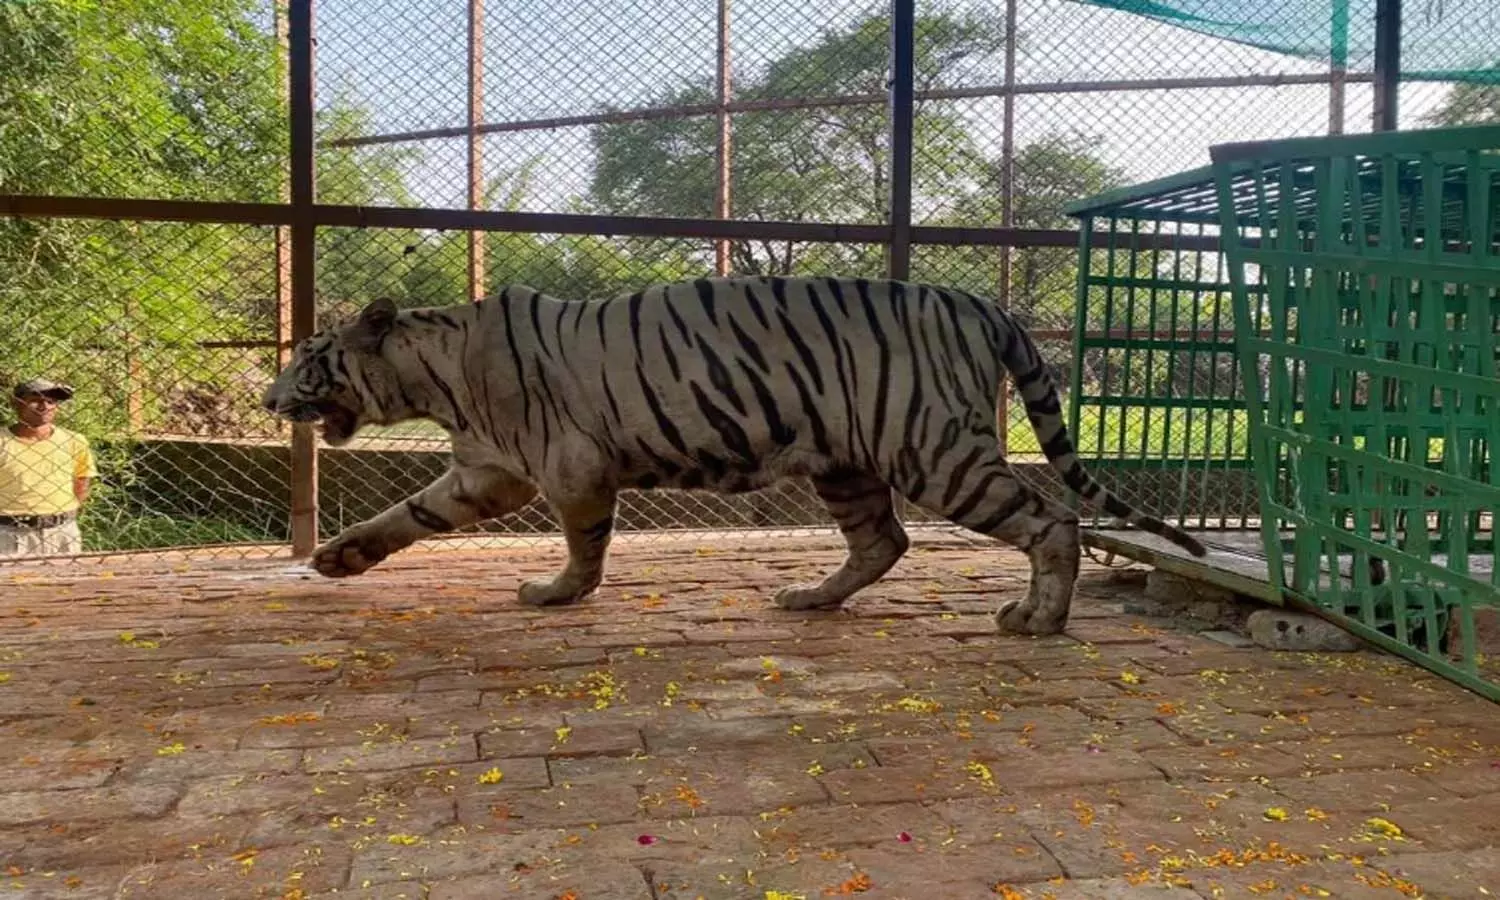 Mukundpur Tiger Safari: रीवा के मुकुंदपुर टाइगर सफारी को येलो टाइगर के बदले मिला सफेद बाघ ‘टीपू‘